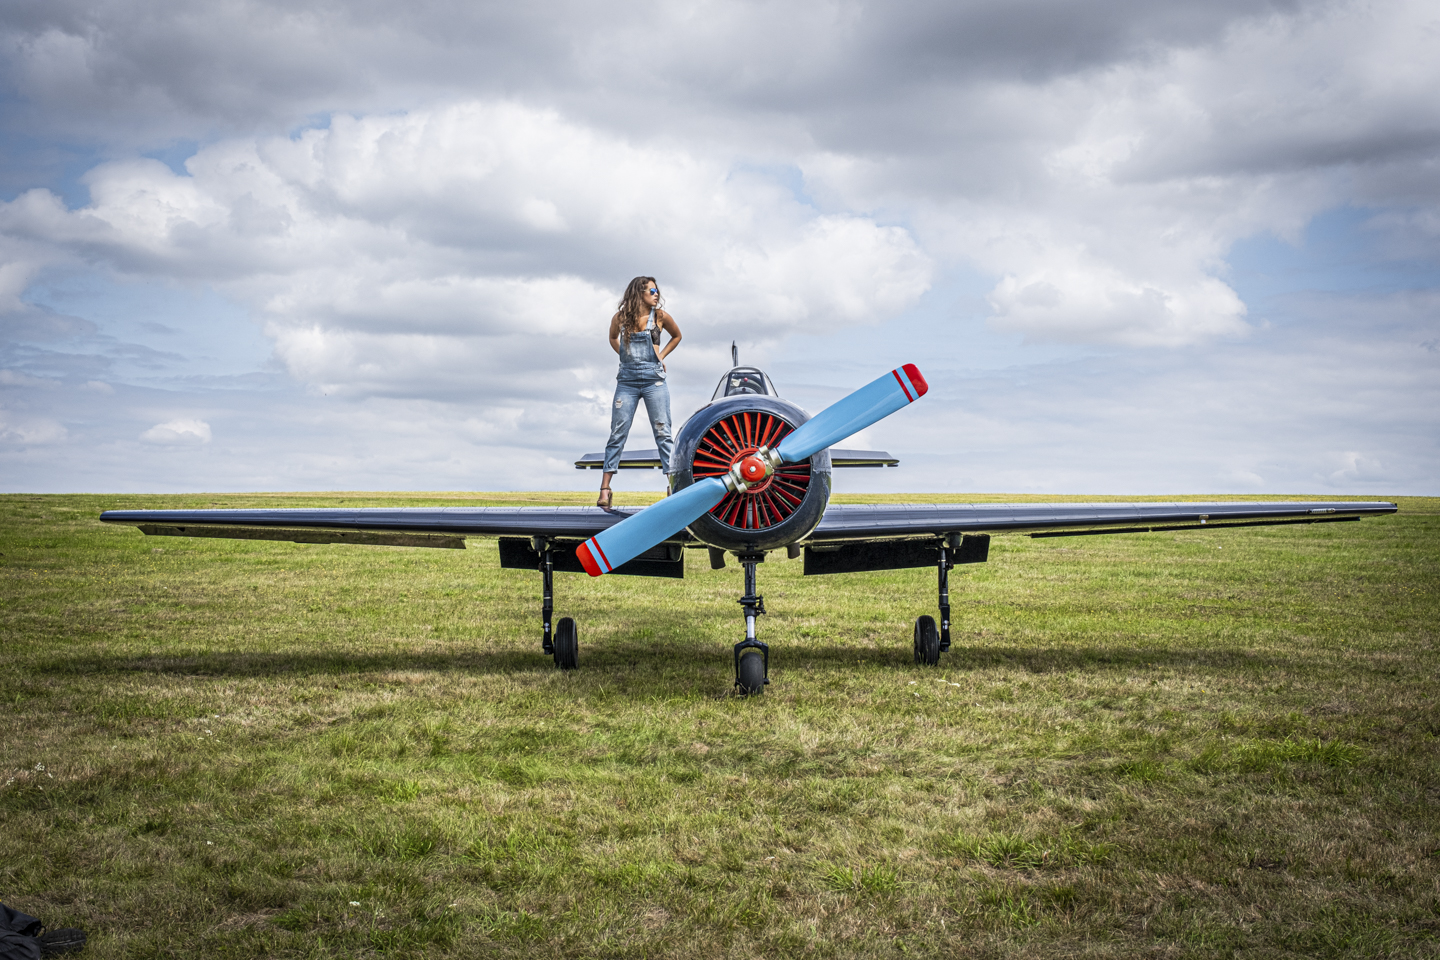 Frau mit Jeans Latzhose steht auf dem Flügel eines kleinen Propeller Flugzeugs